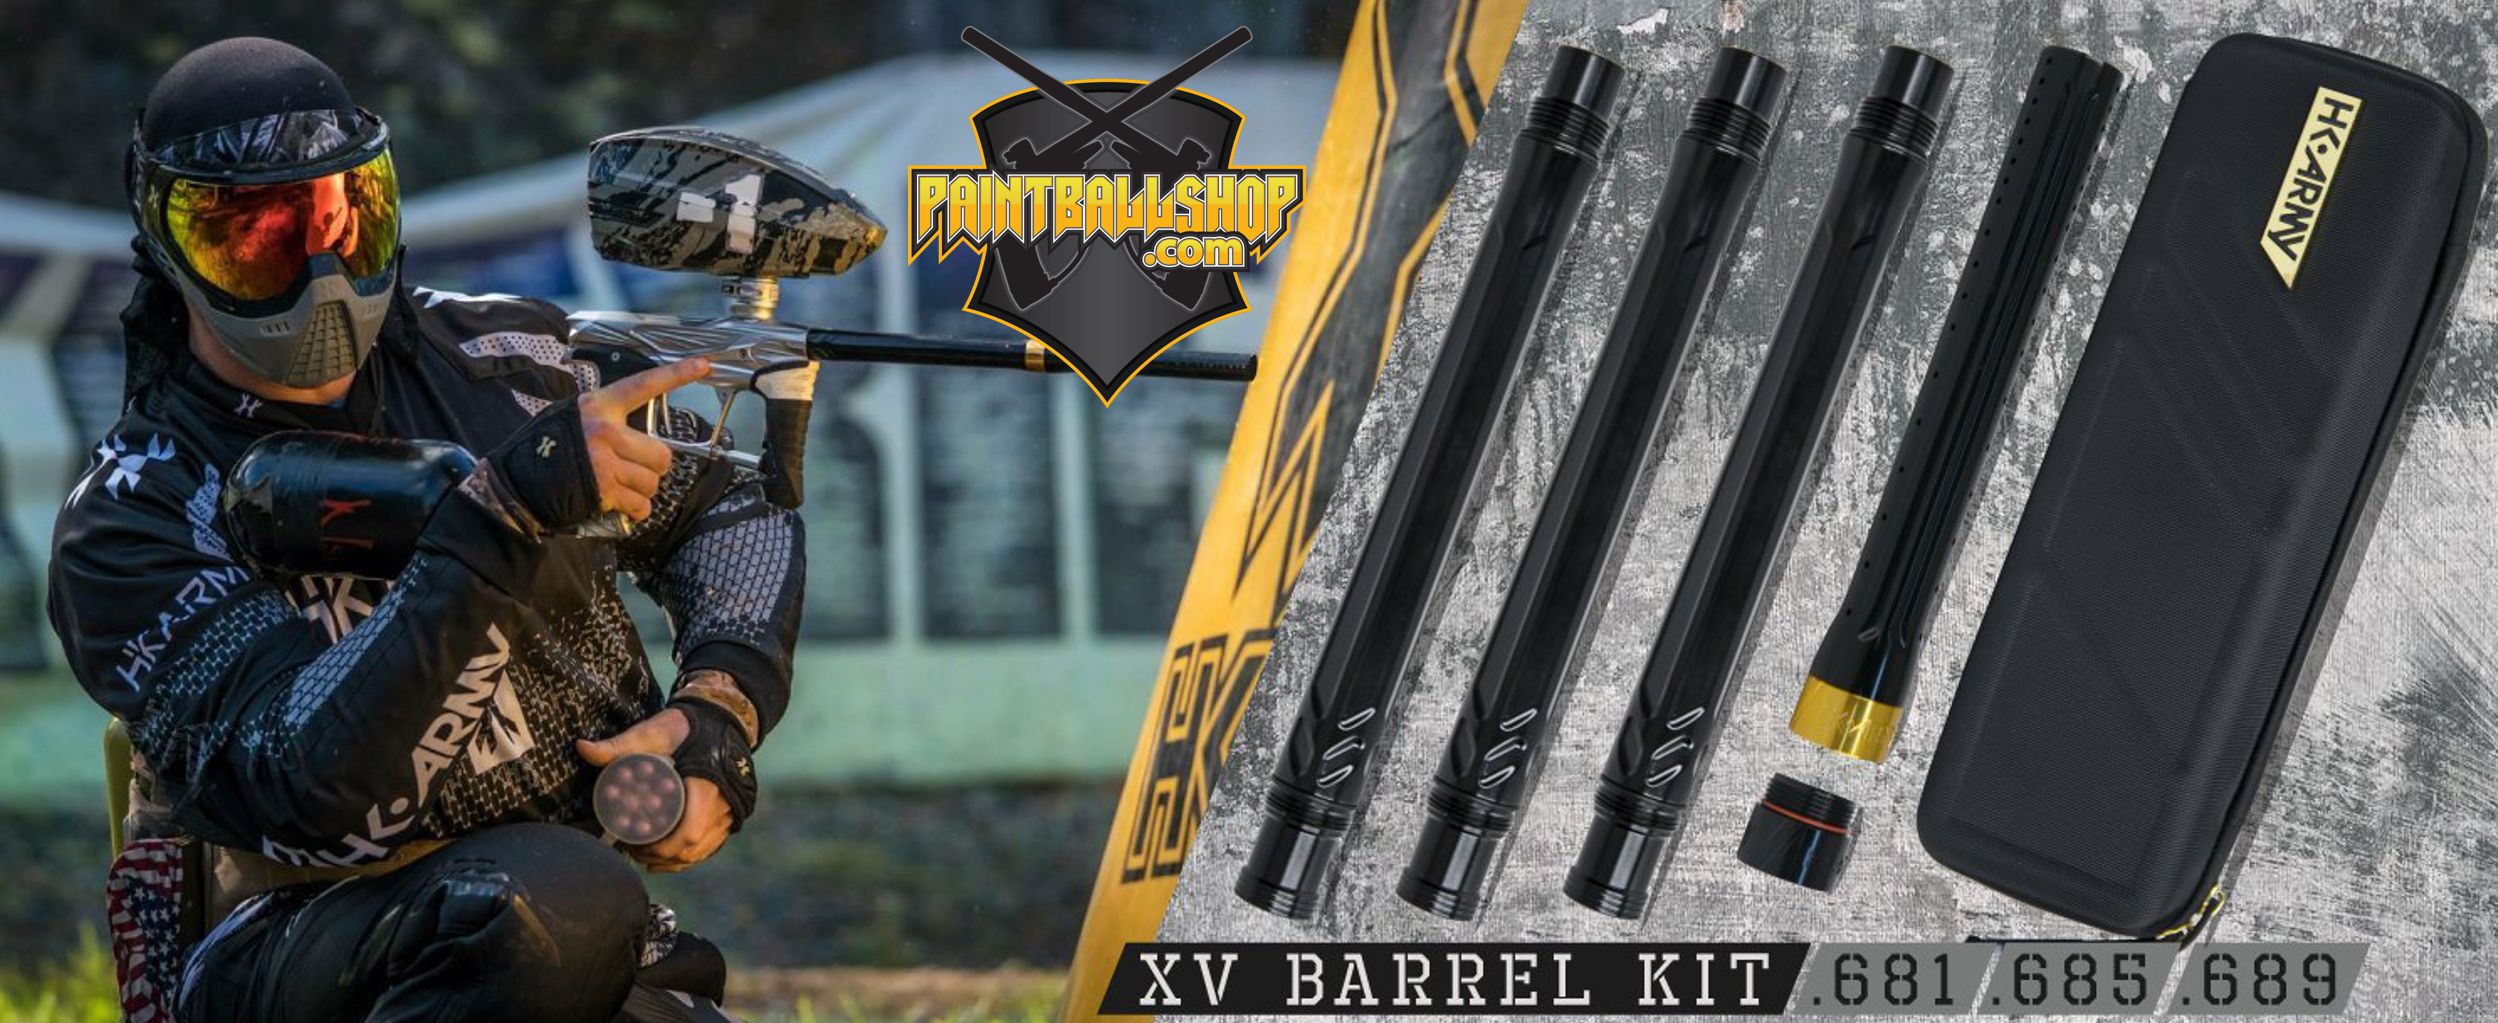 xv-barrel-kit.jpg